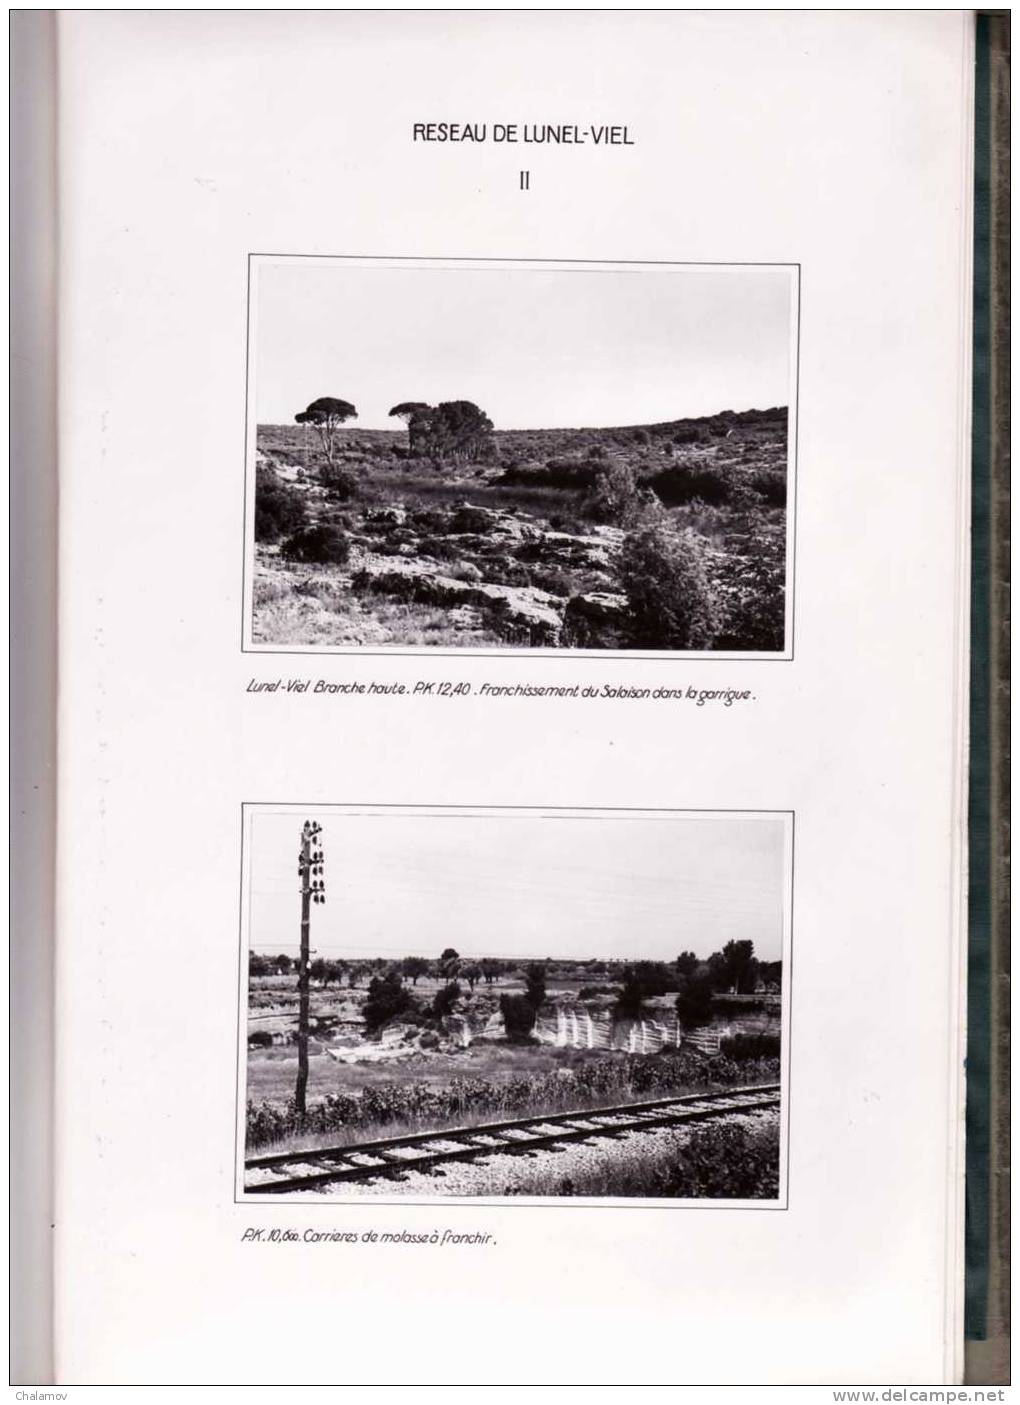 CANAUX du BAS-RHÔNE -- LANGUEDOC , avant-projet , Mémoire Explicatif par ASTIER , FABRE et DEFORGES ( Nîmes 1953 )